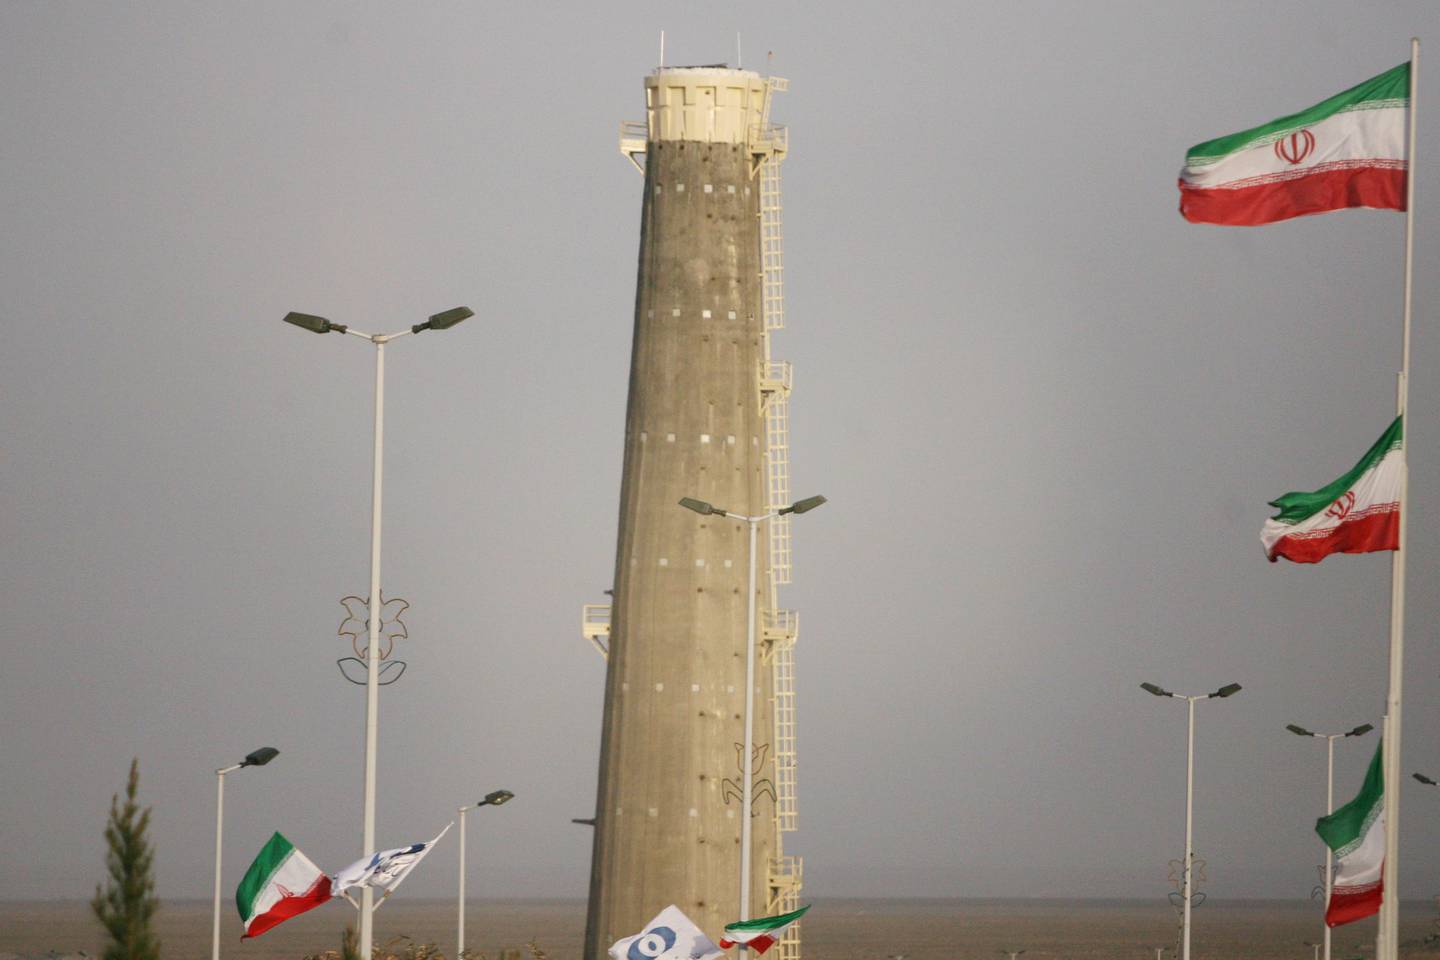 Vista general de las instalaciones de enriquecimiento nuclear de Natanz, el 9 de abril de 2007, a 180 millas al sur de Teherán, Irán.